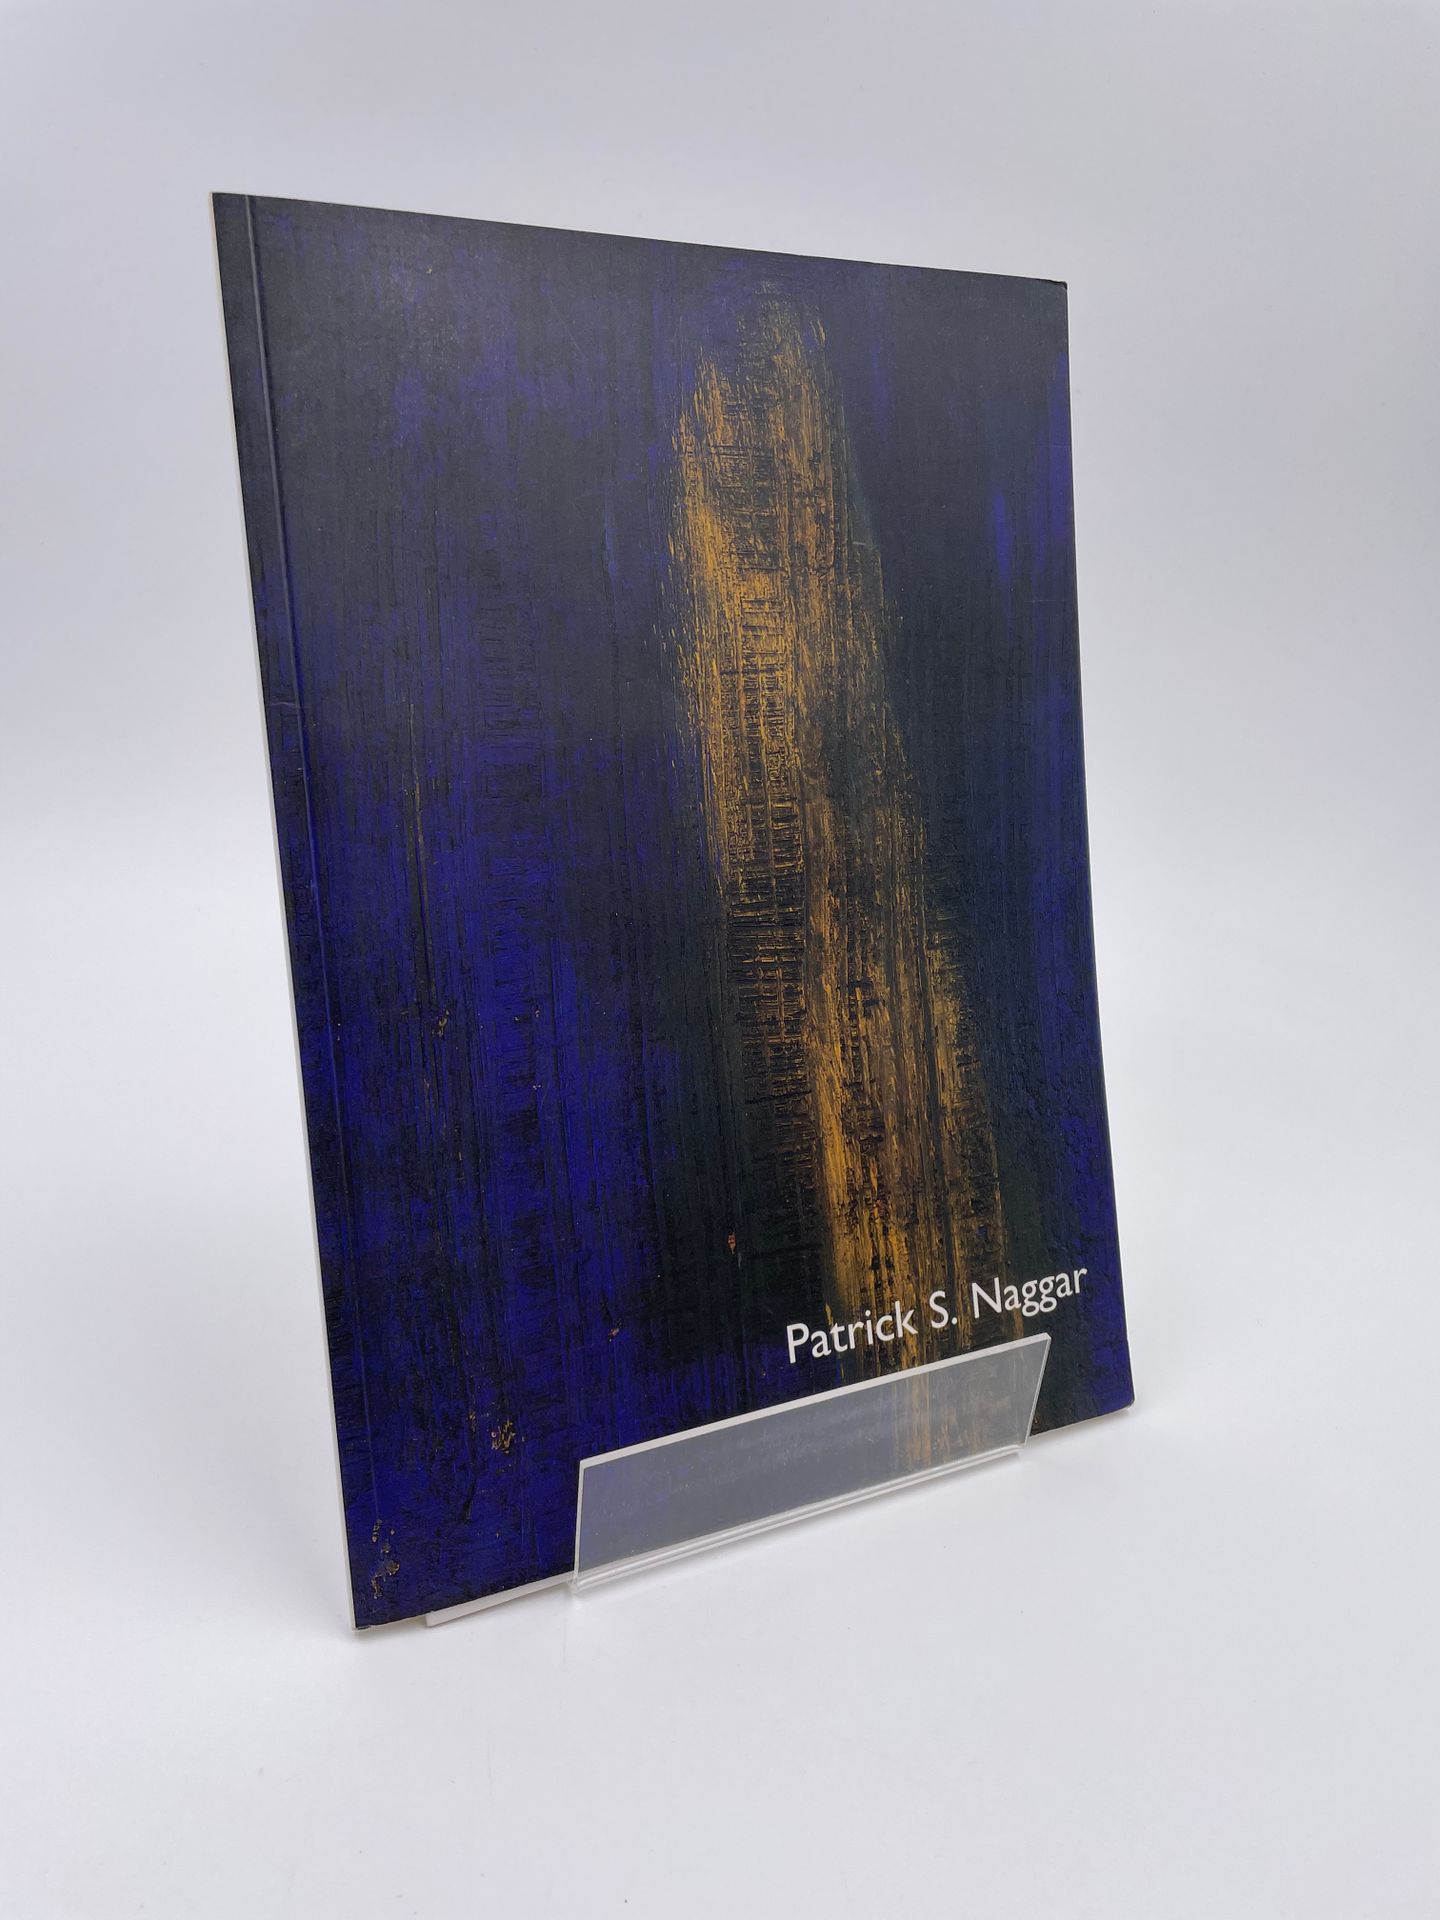 Null 1 volumen: "Patrick S. Naggar, Pinturas recientes", París

"ENTREGADO EN 17&hellip;